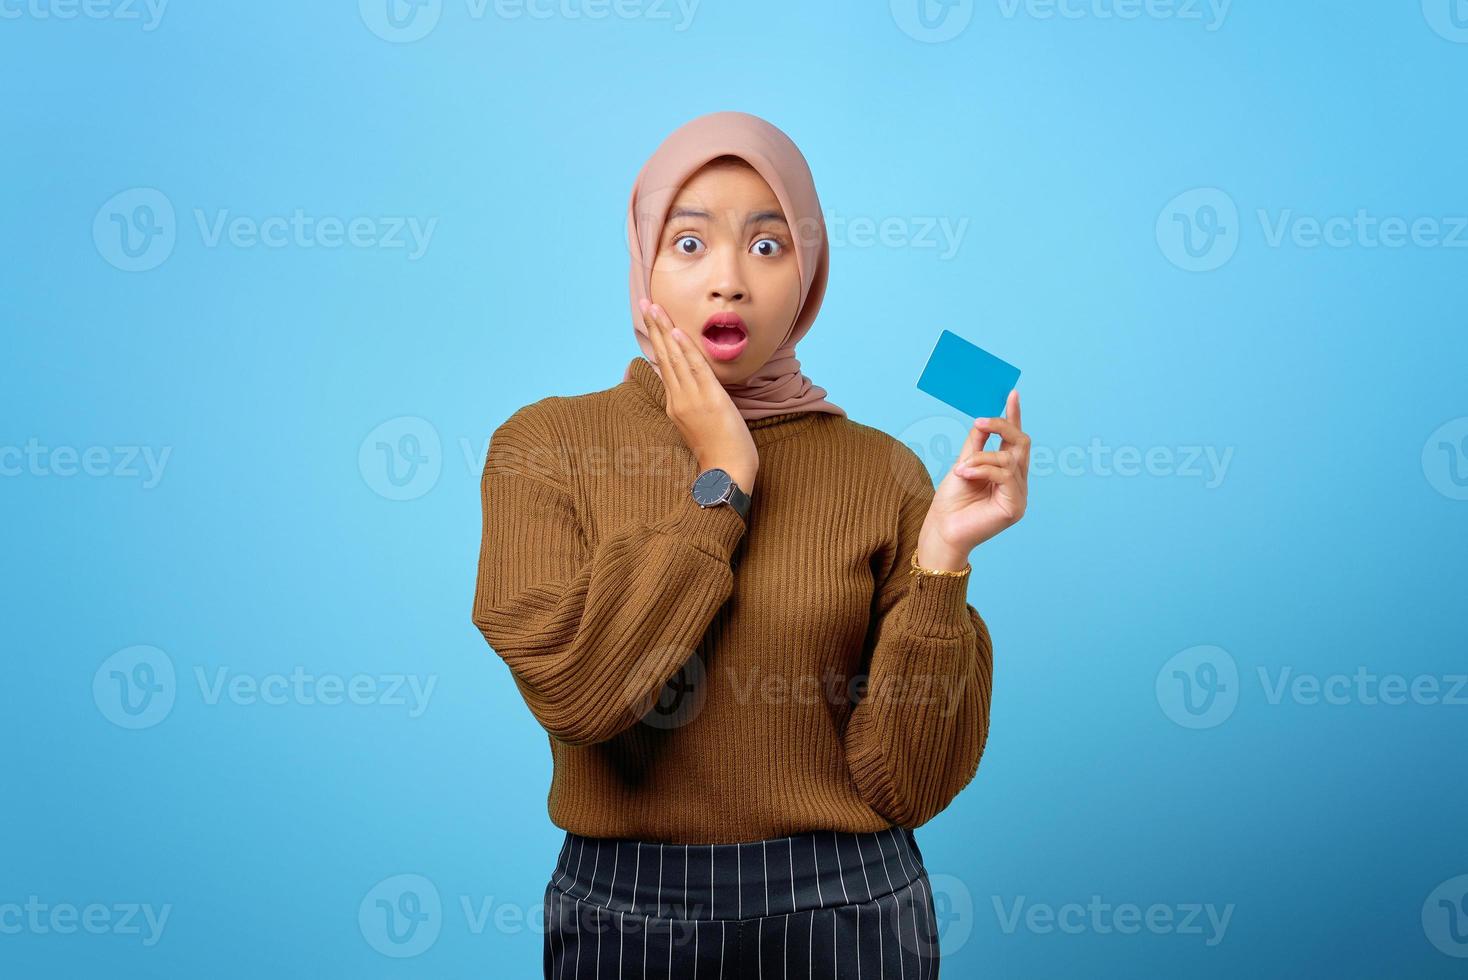 verraste jonge aziatische vrouw die creditcard vasthoudt en wangen aanraakt op blauwe achtergrond foto